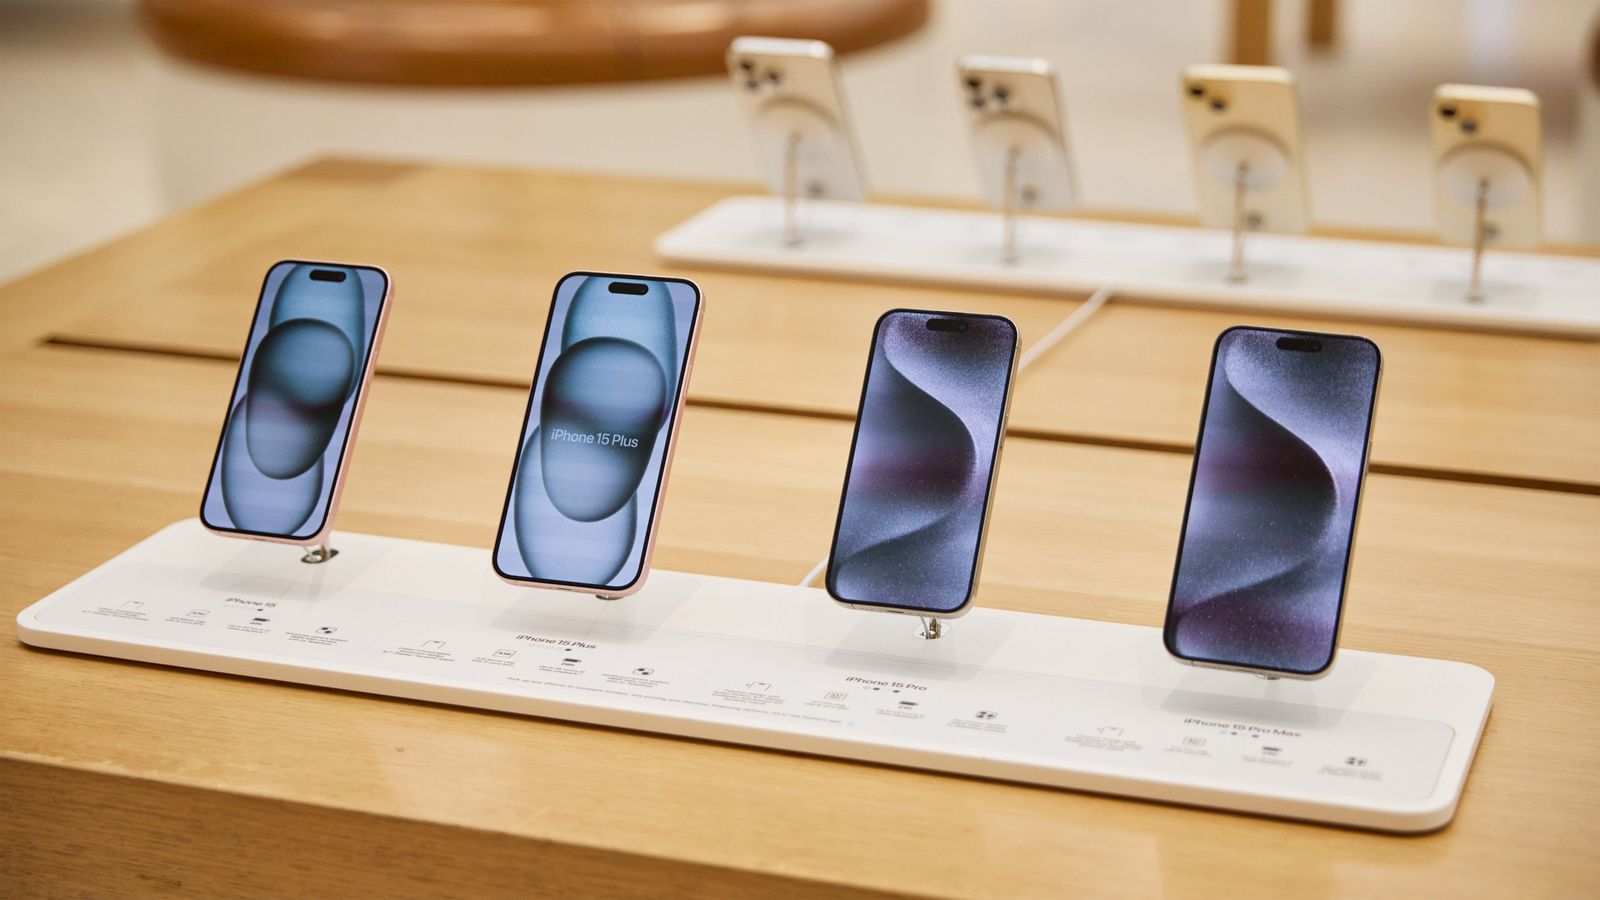 Da iPhoneIslam.com, cinque smartphone vengono visualizzati in un negozio al dettaglio, ciascuno con il proprio schermo con sfondi diversi, inclusi gli ultimi aggiornamenti di notizie.